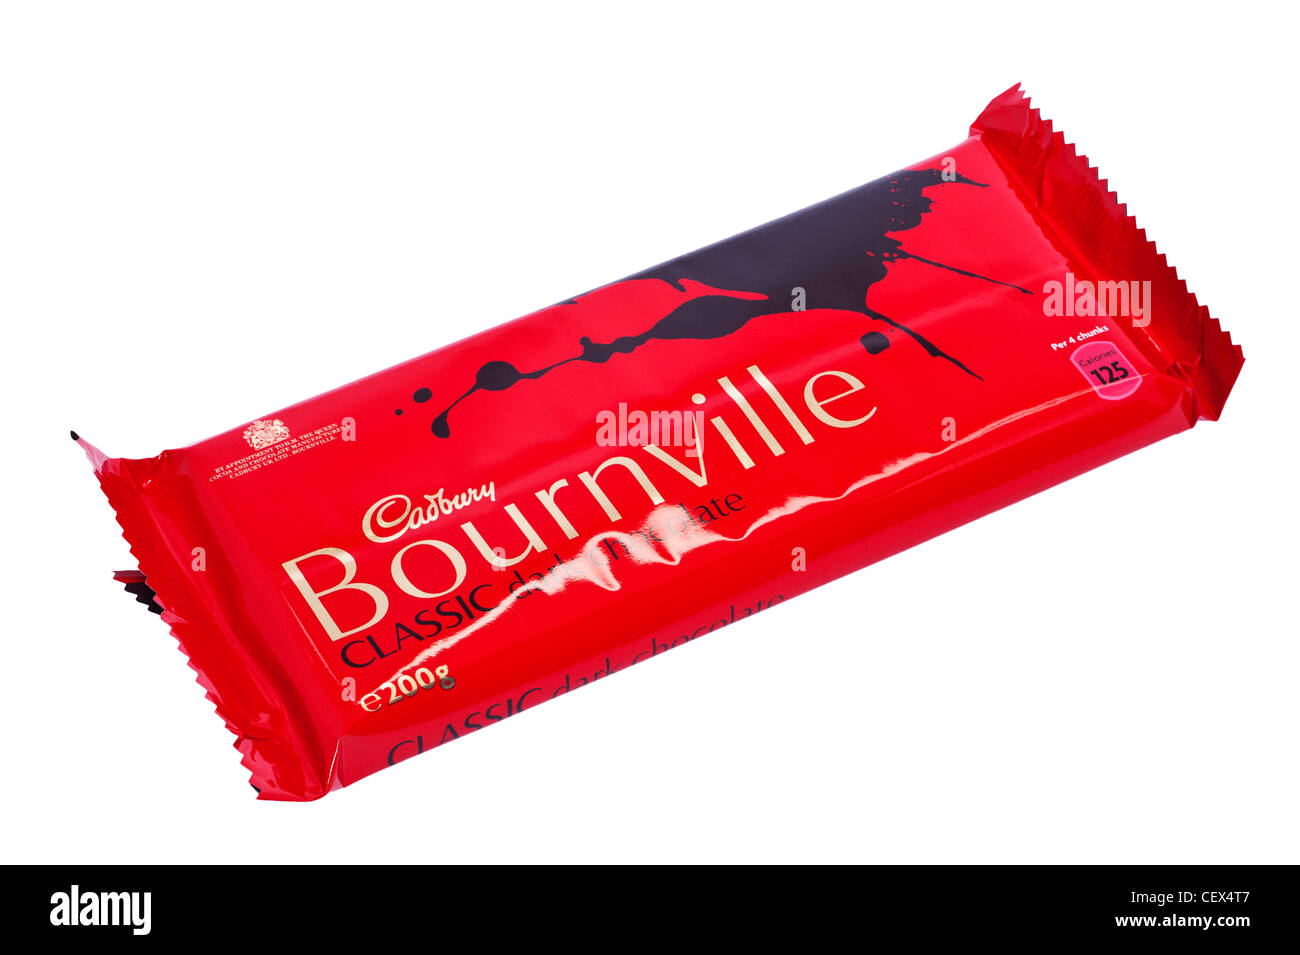 Una barra de Cadbury Bournville classic dark chocolate negro sobre un fondo blanco. Foto de stock